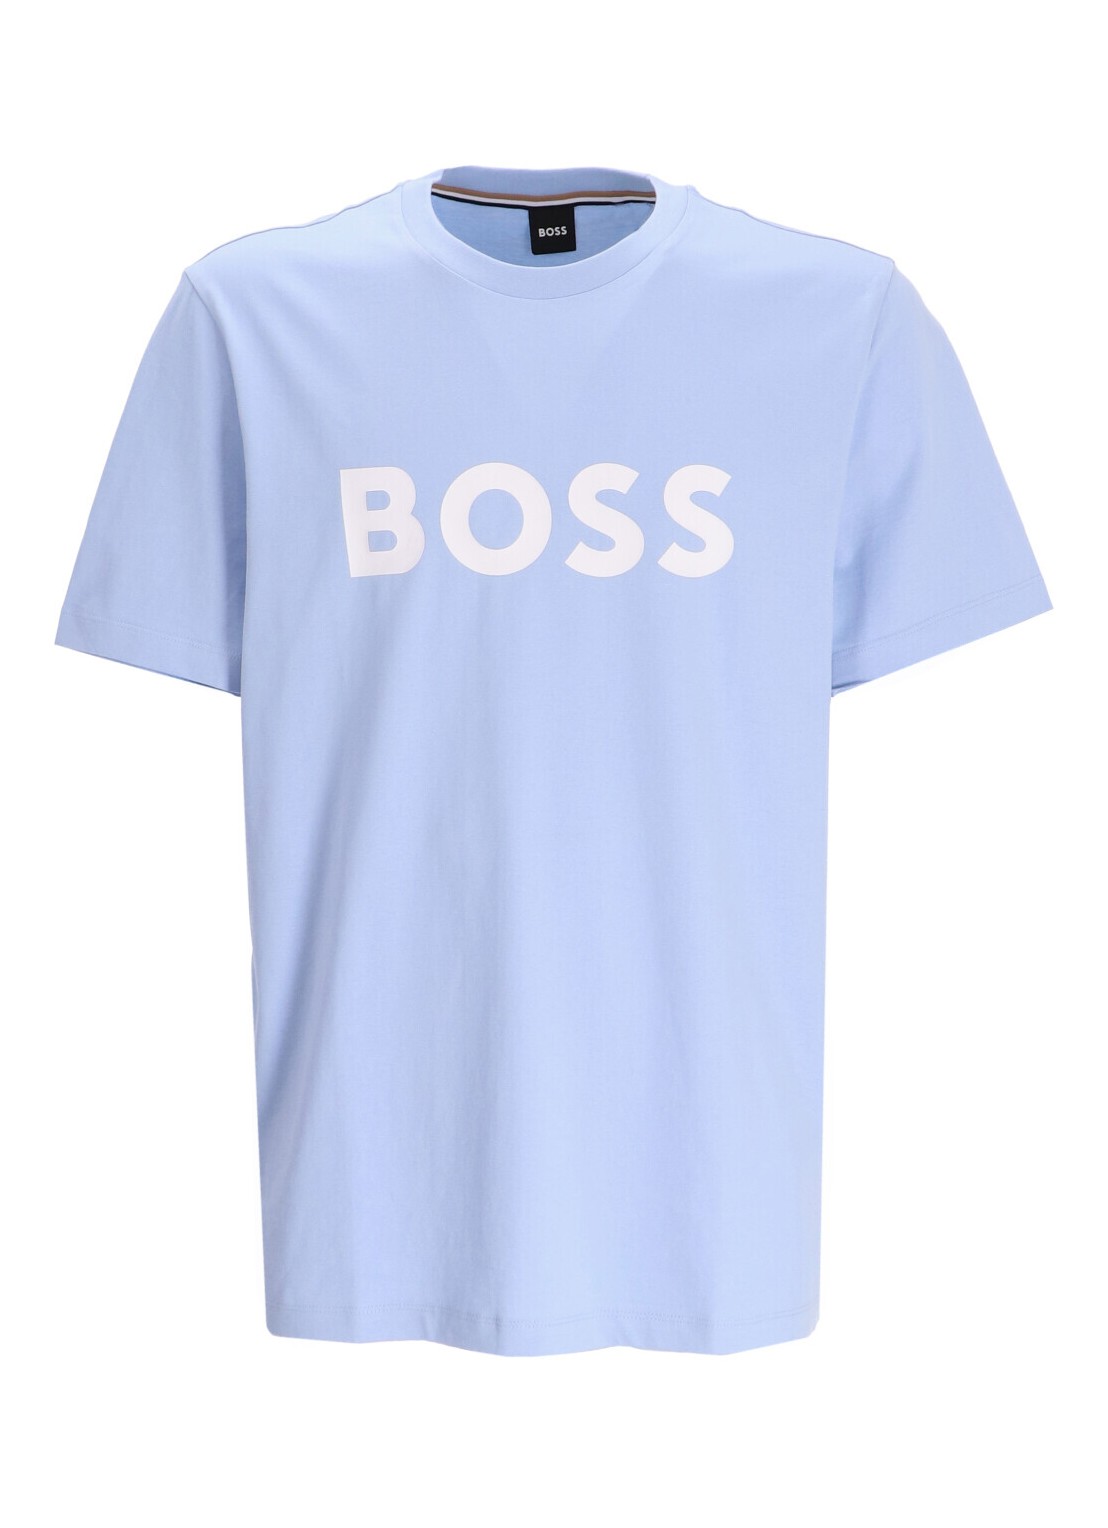 Camiseta boss t-shirt man tiburt 354 50495742 450 talla 3XL
 